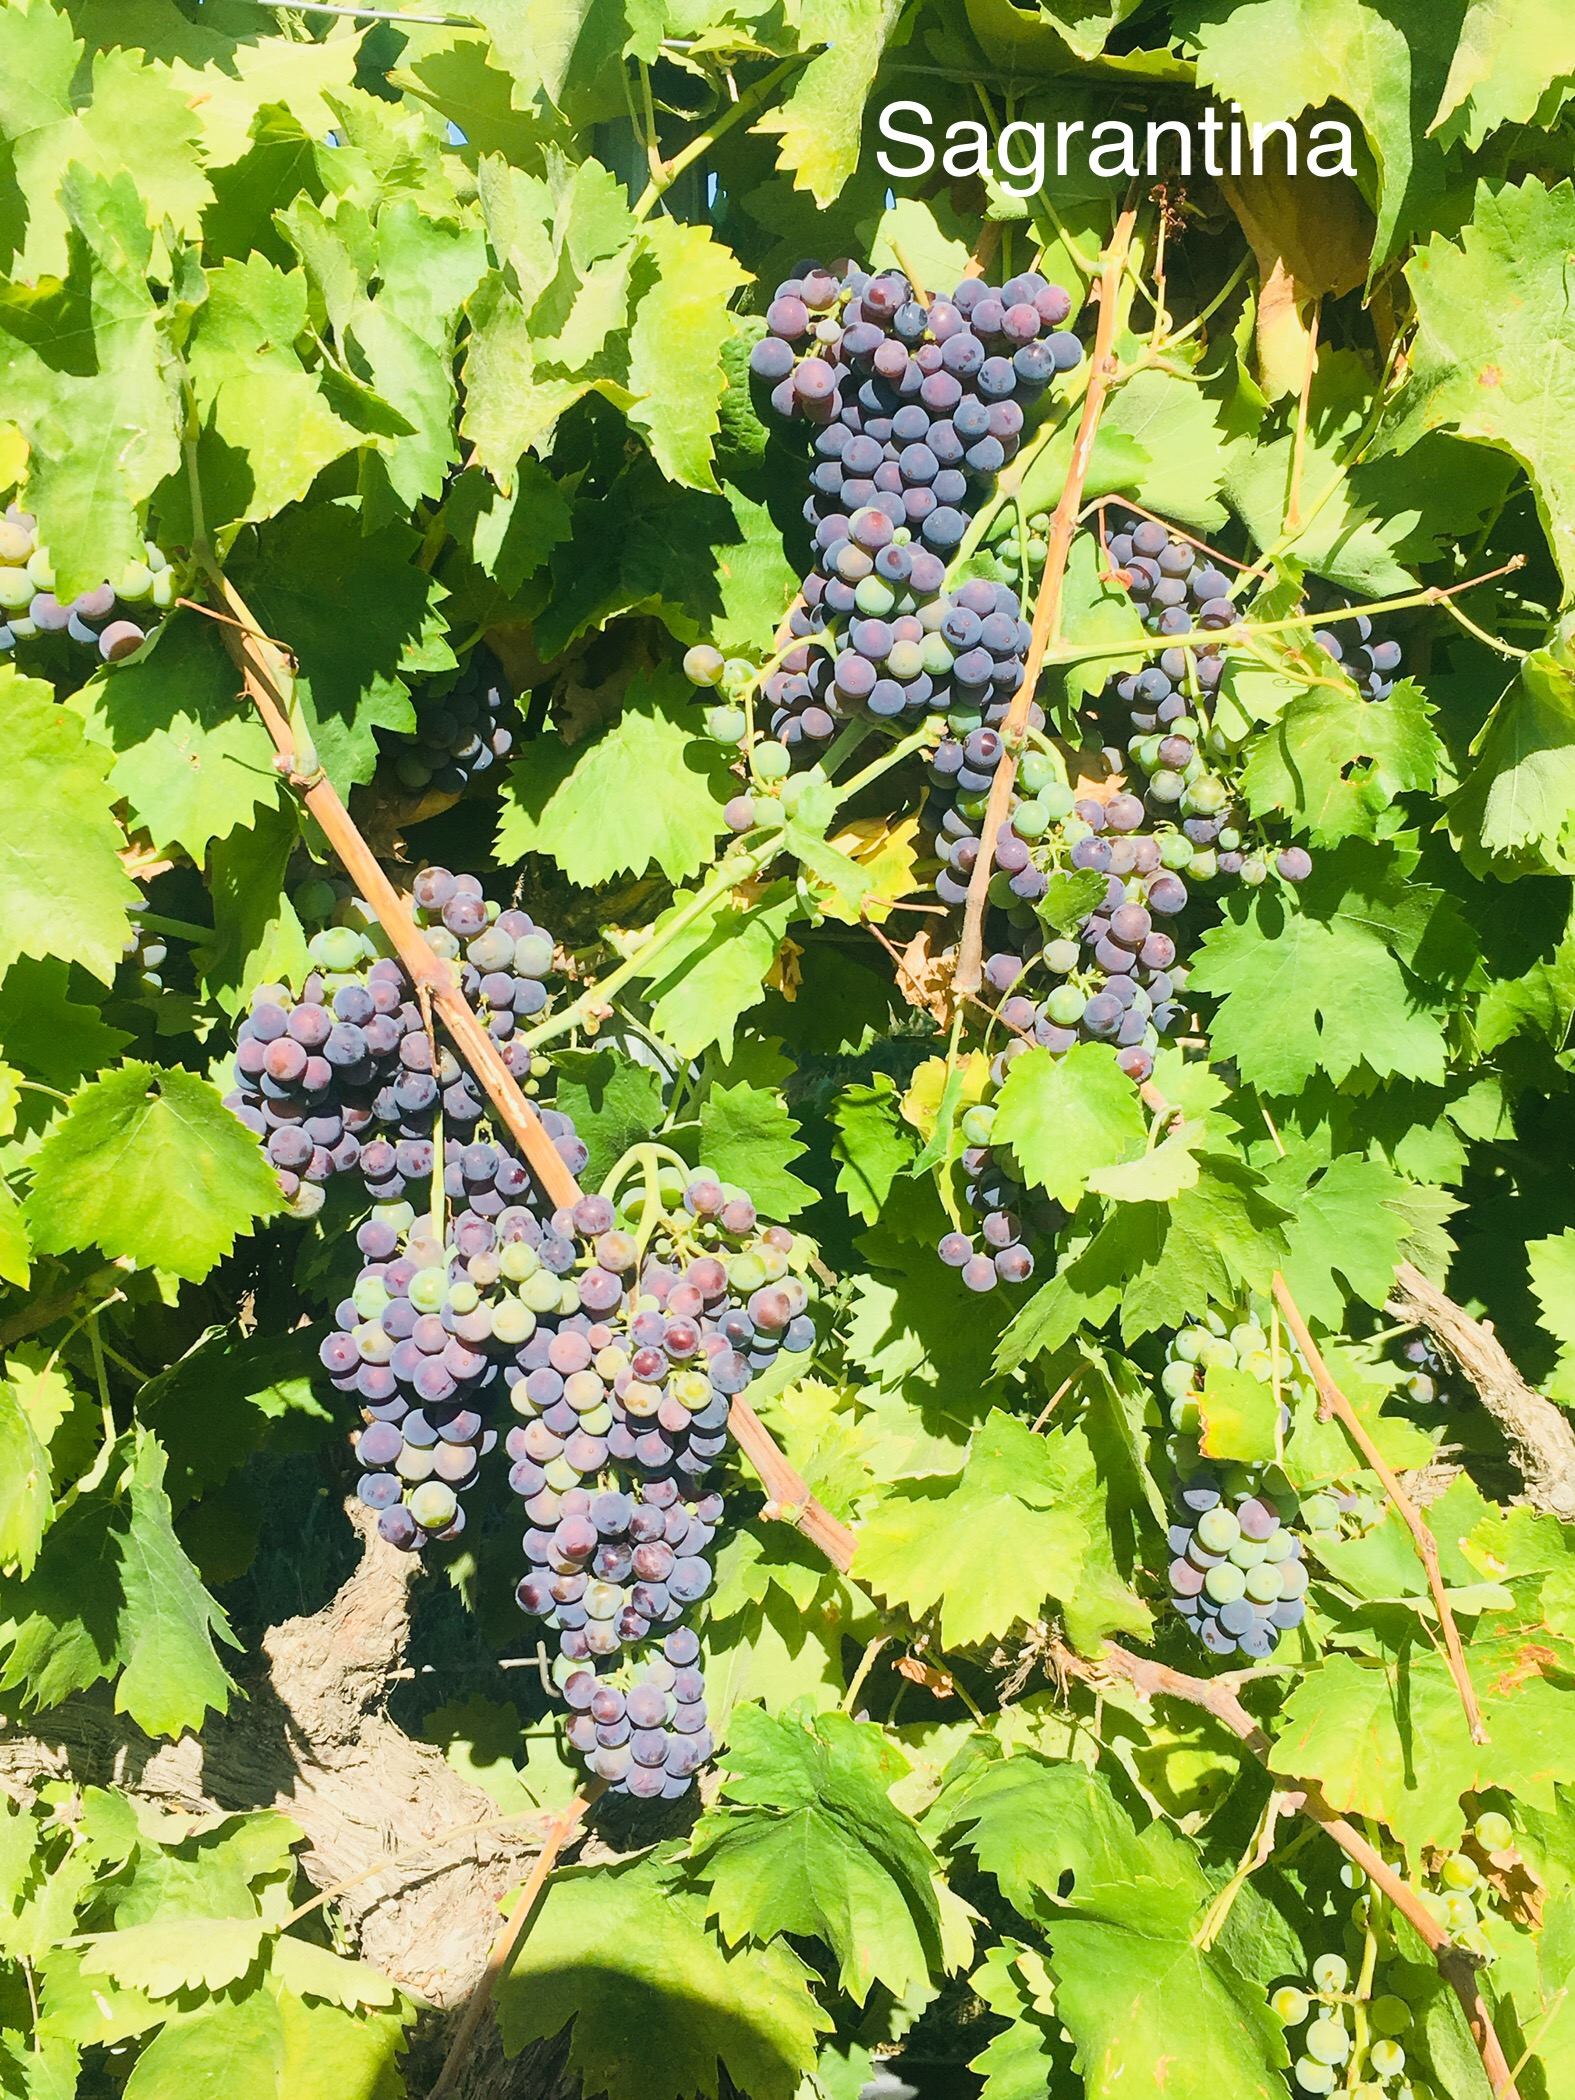 sagrantino_italian california wine grapes_musto wine grape_wine